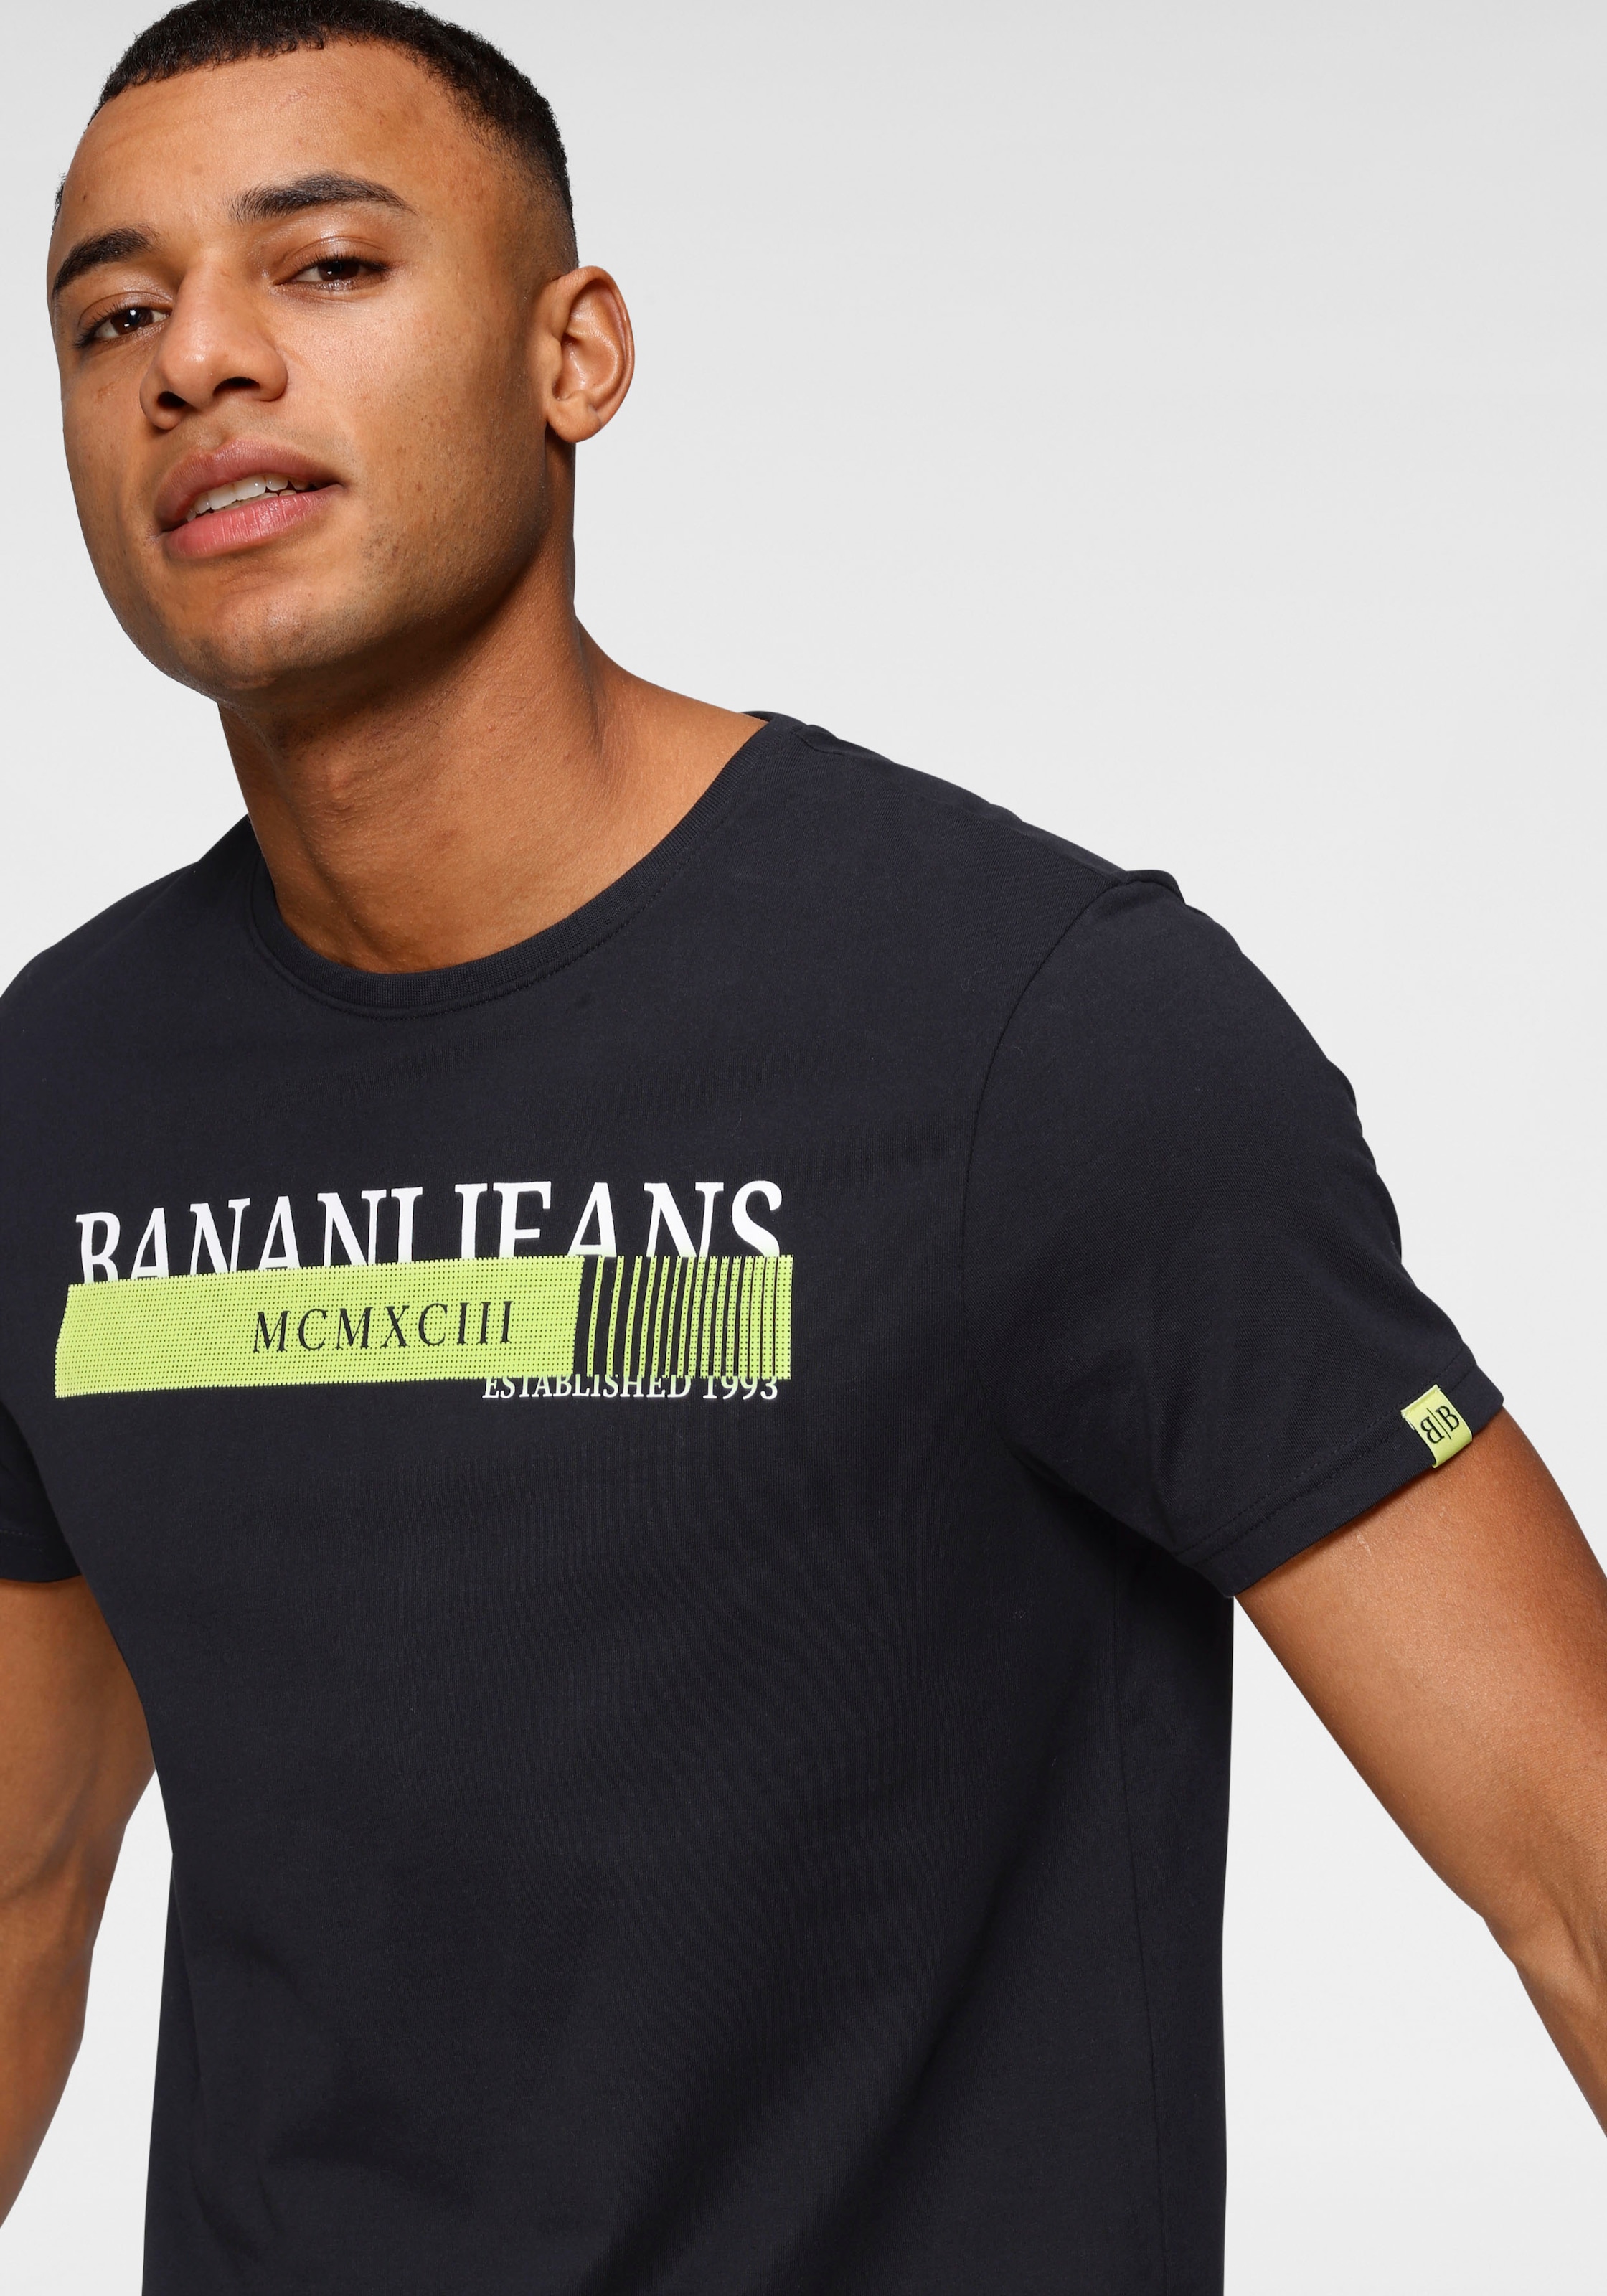 OTTO neonfarbenen Print bei Banani T-Shirt, shoppen online mit Bruno